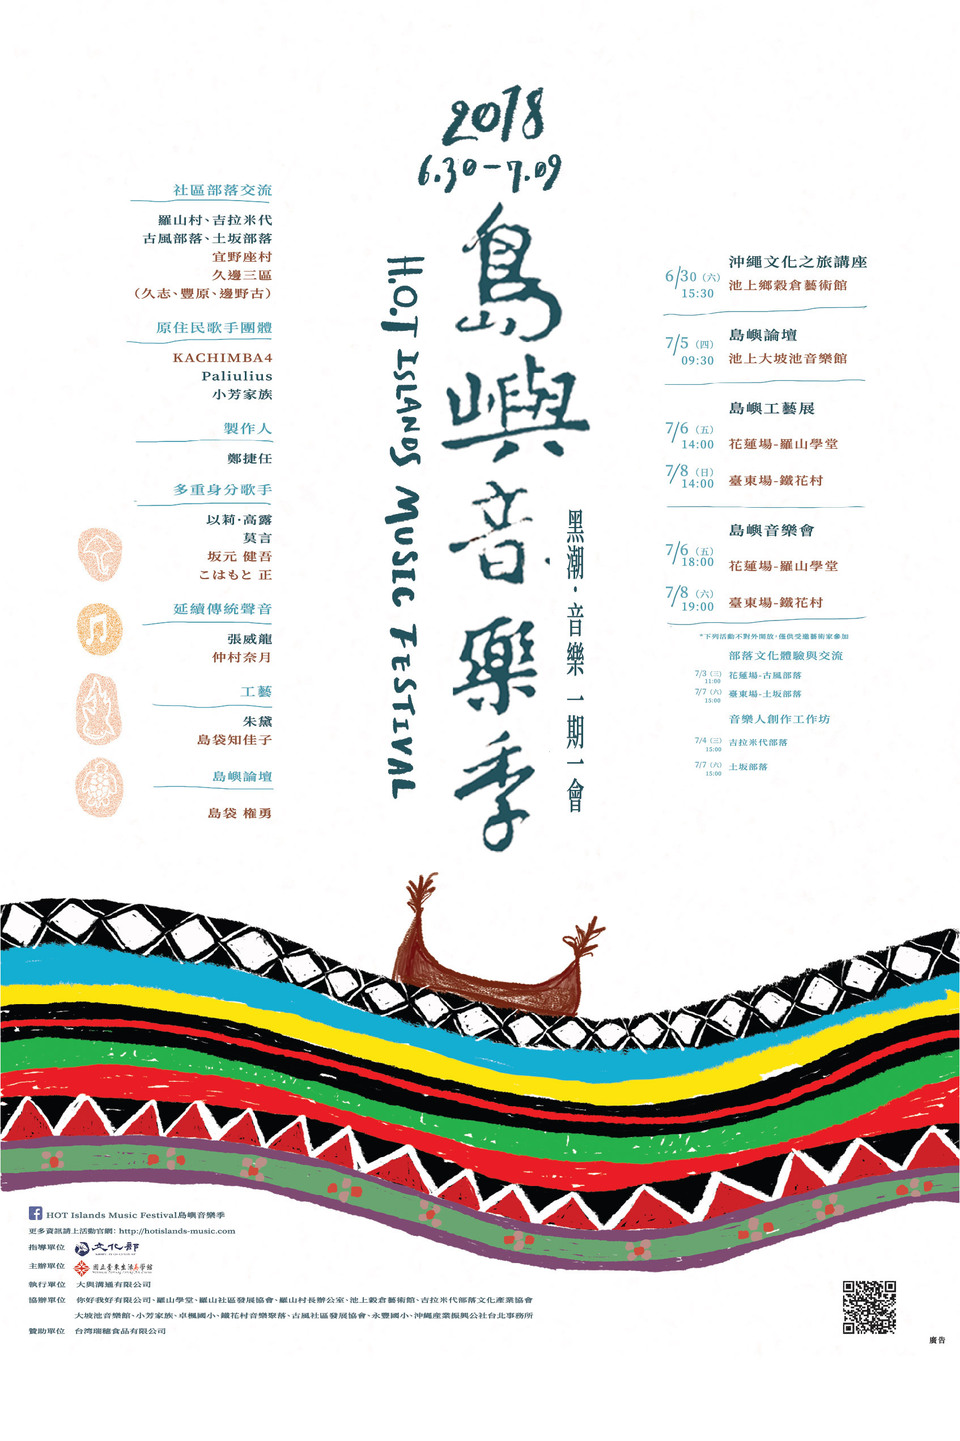 Taiwan-Okinawa music festival to kick off in eastern Taiwan